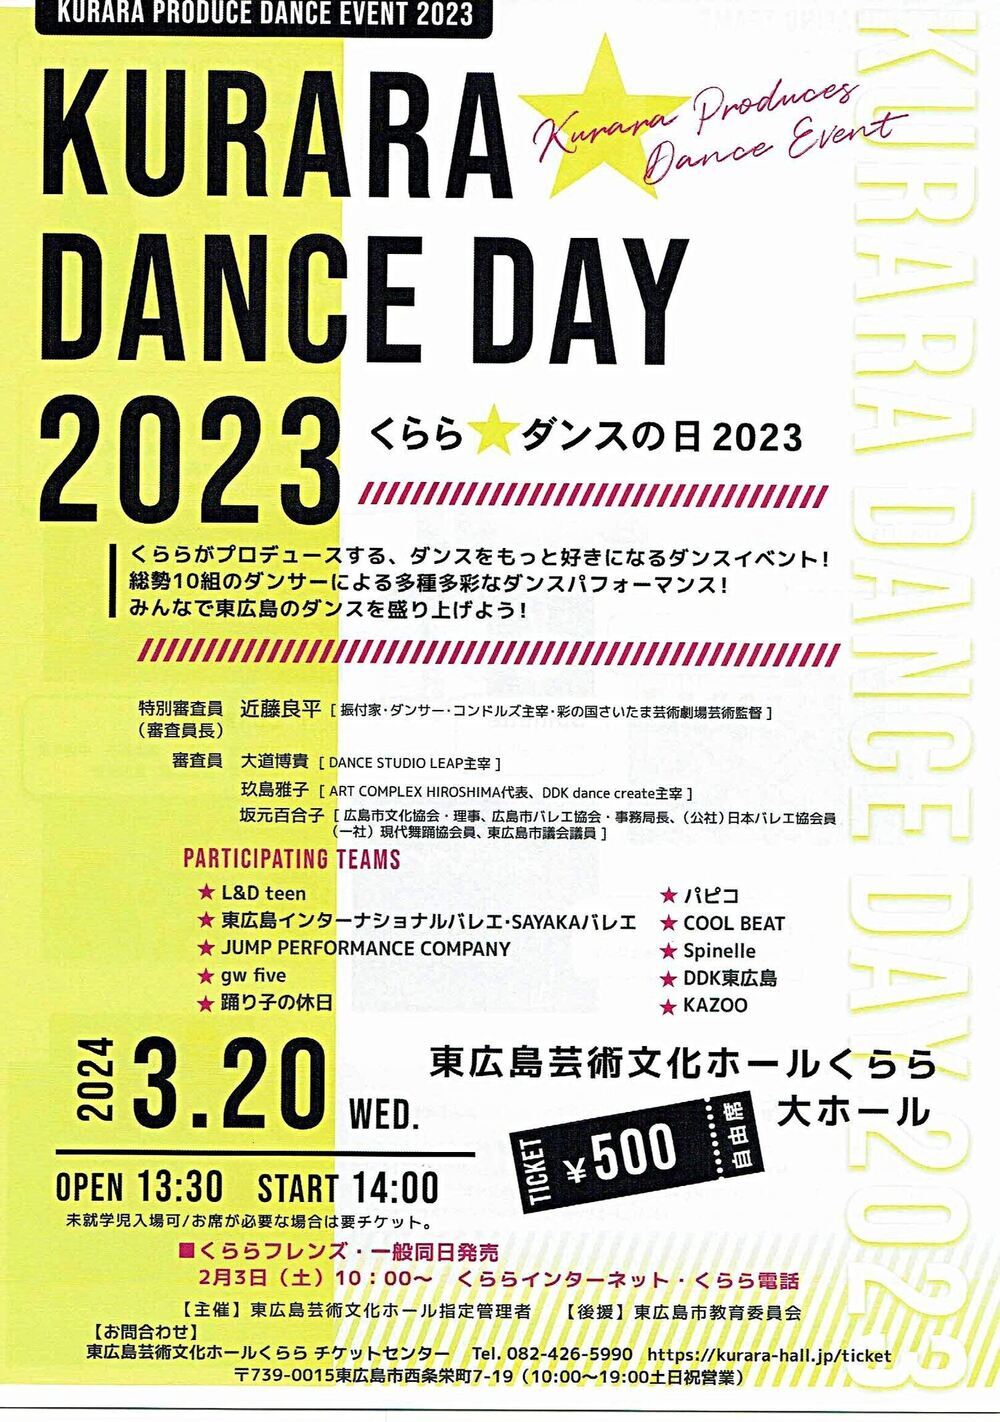 KURARA DANCE DAY 2023